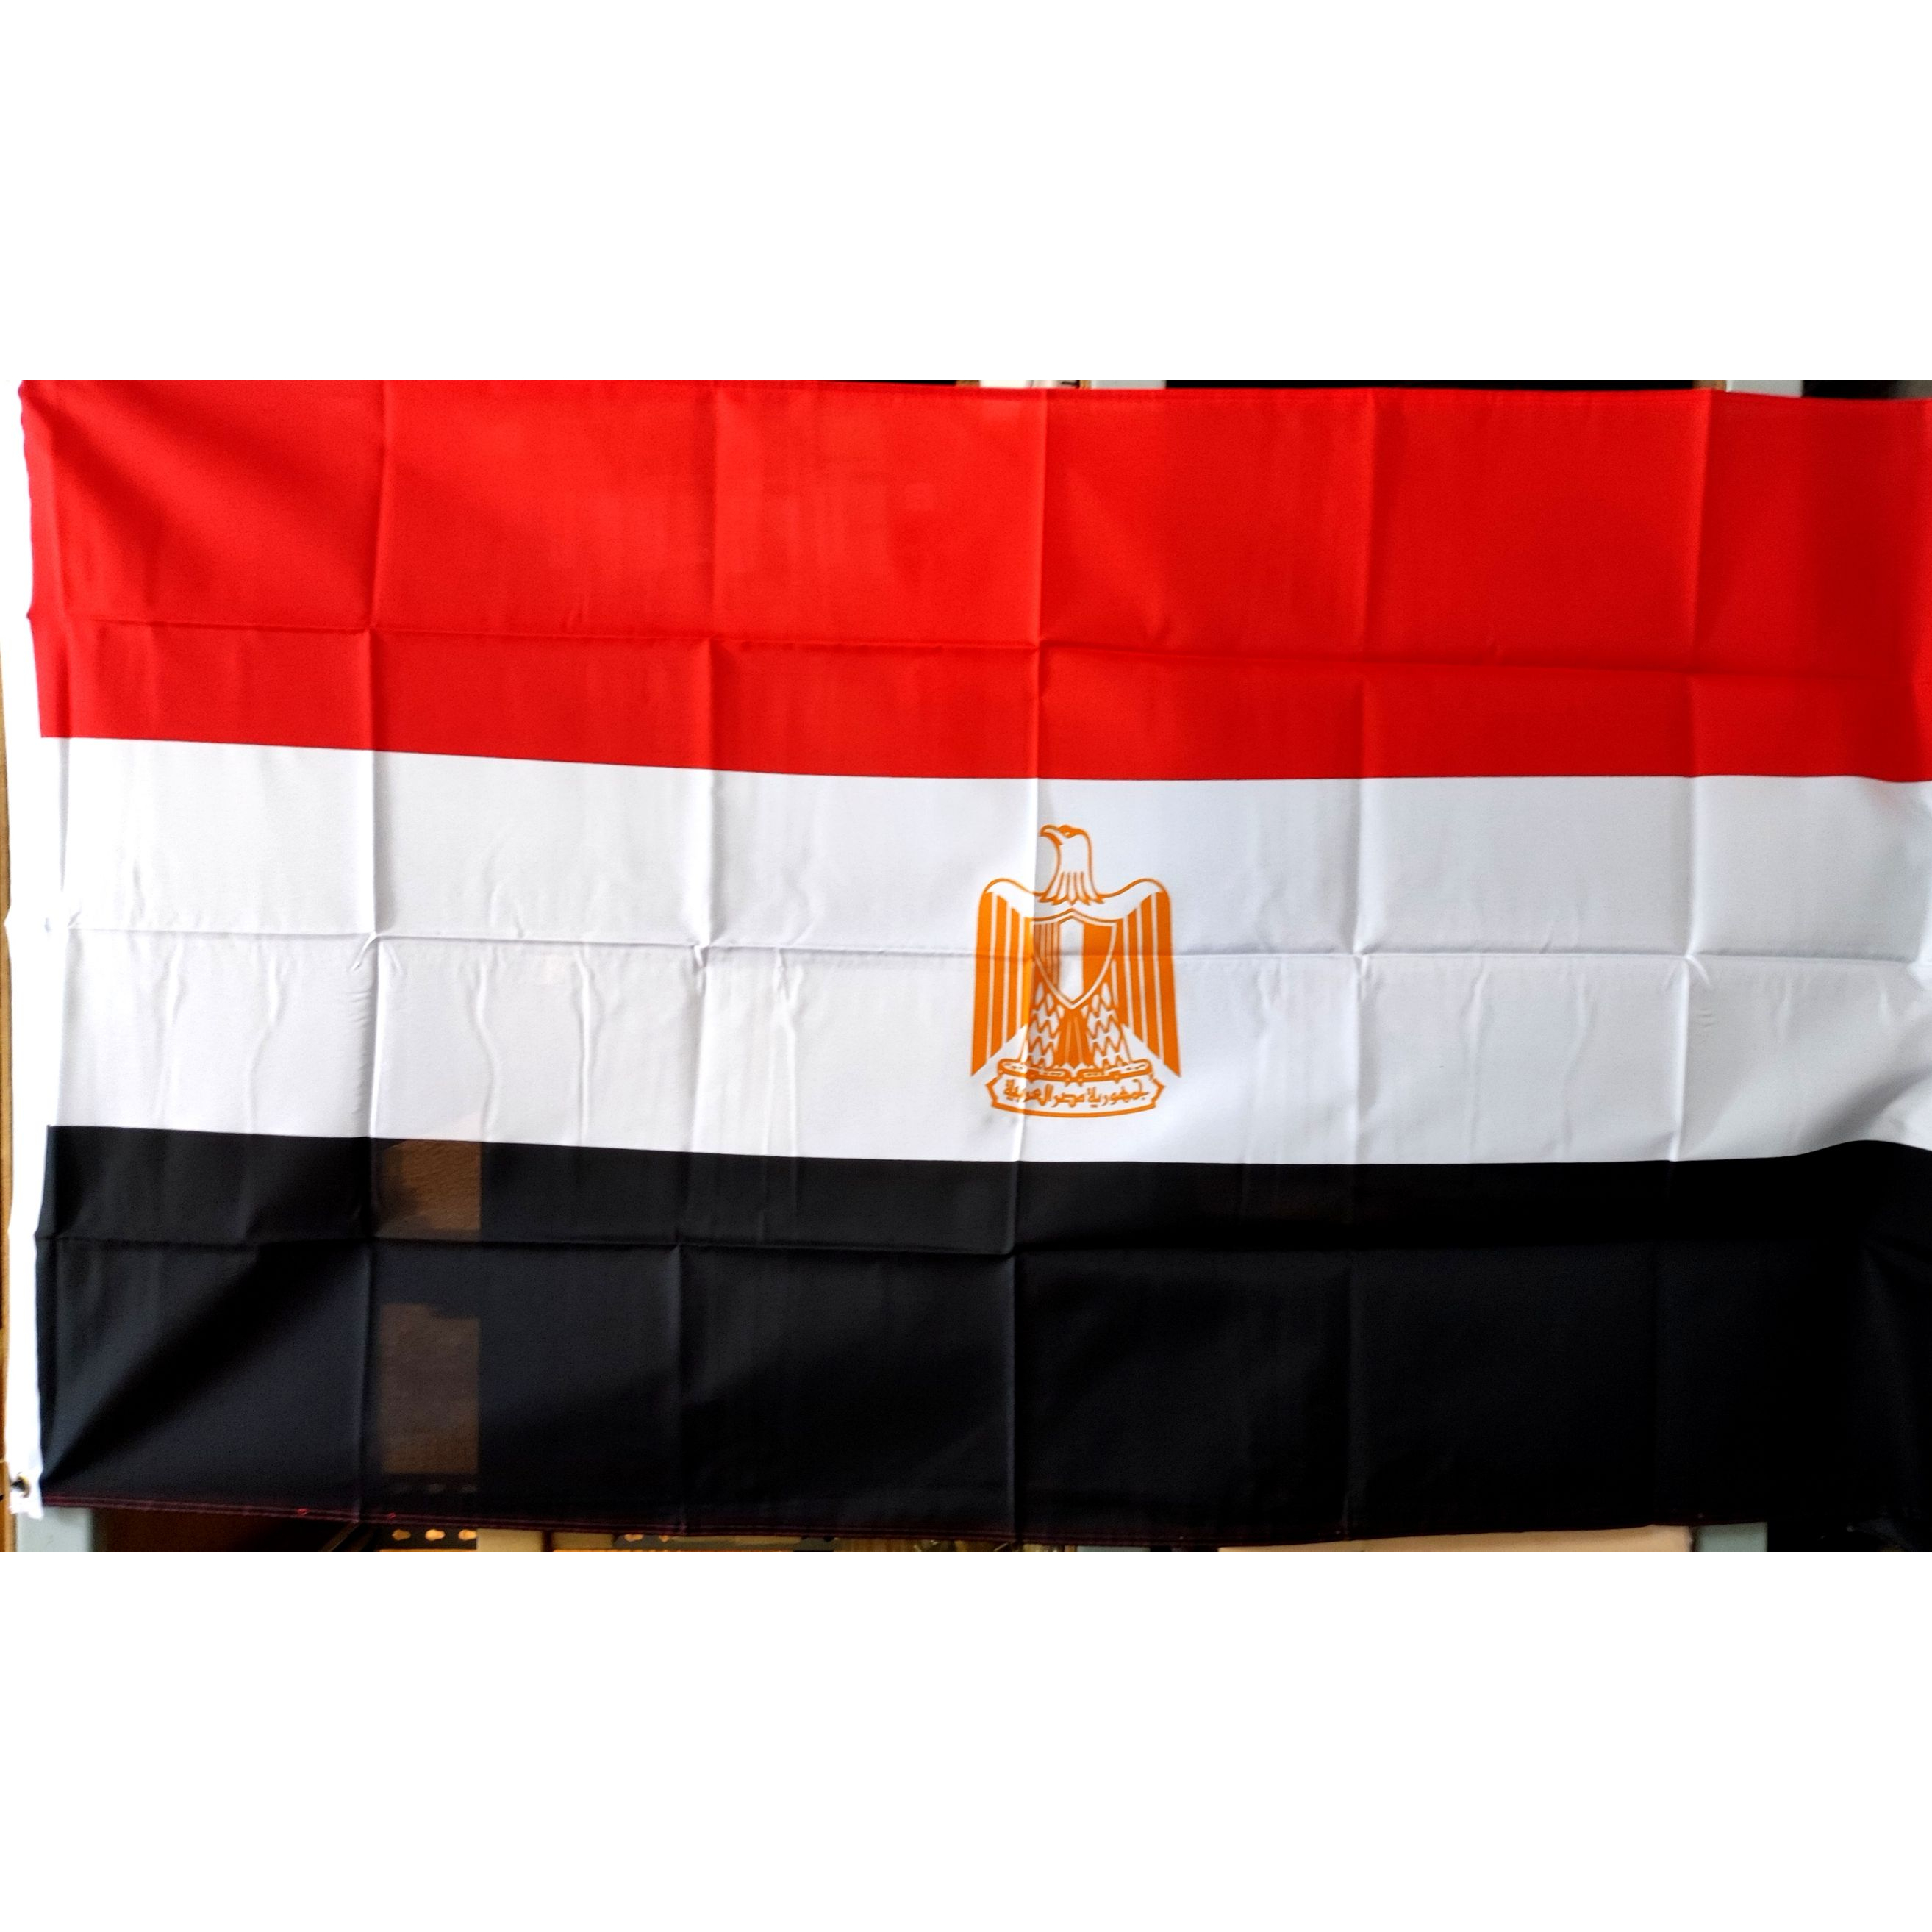 埃及國旗 Egypt Flag ►國旗特區